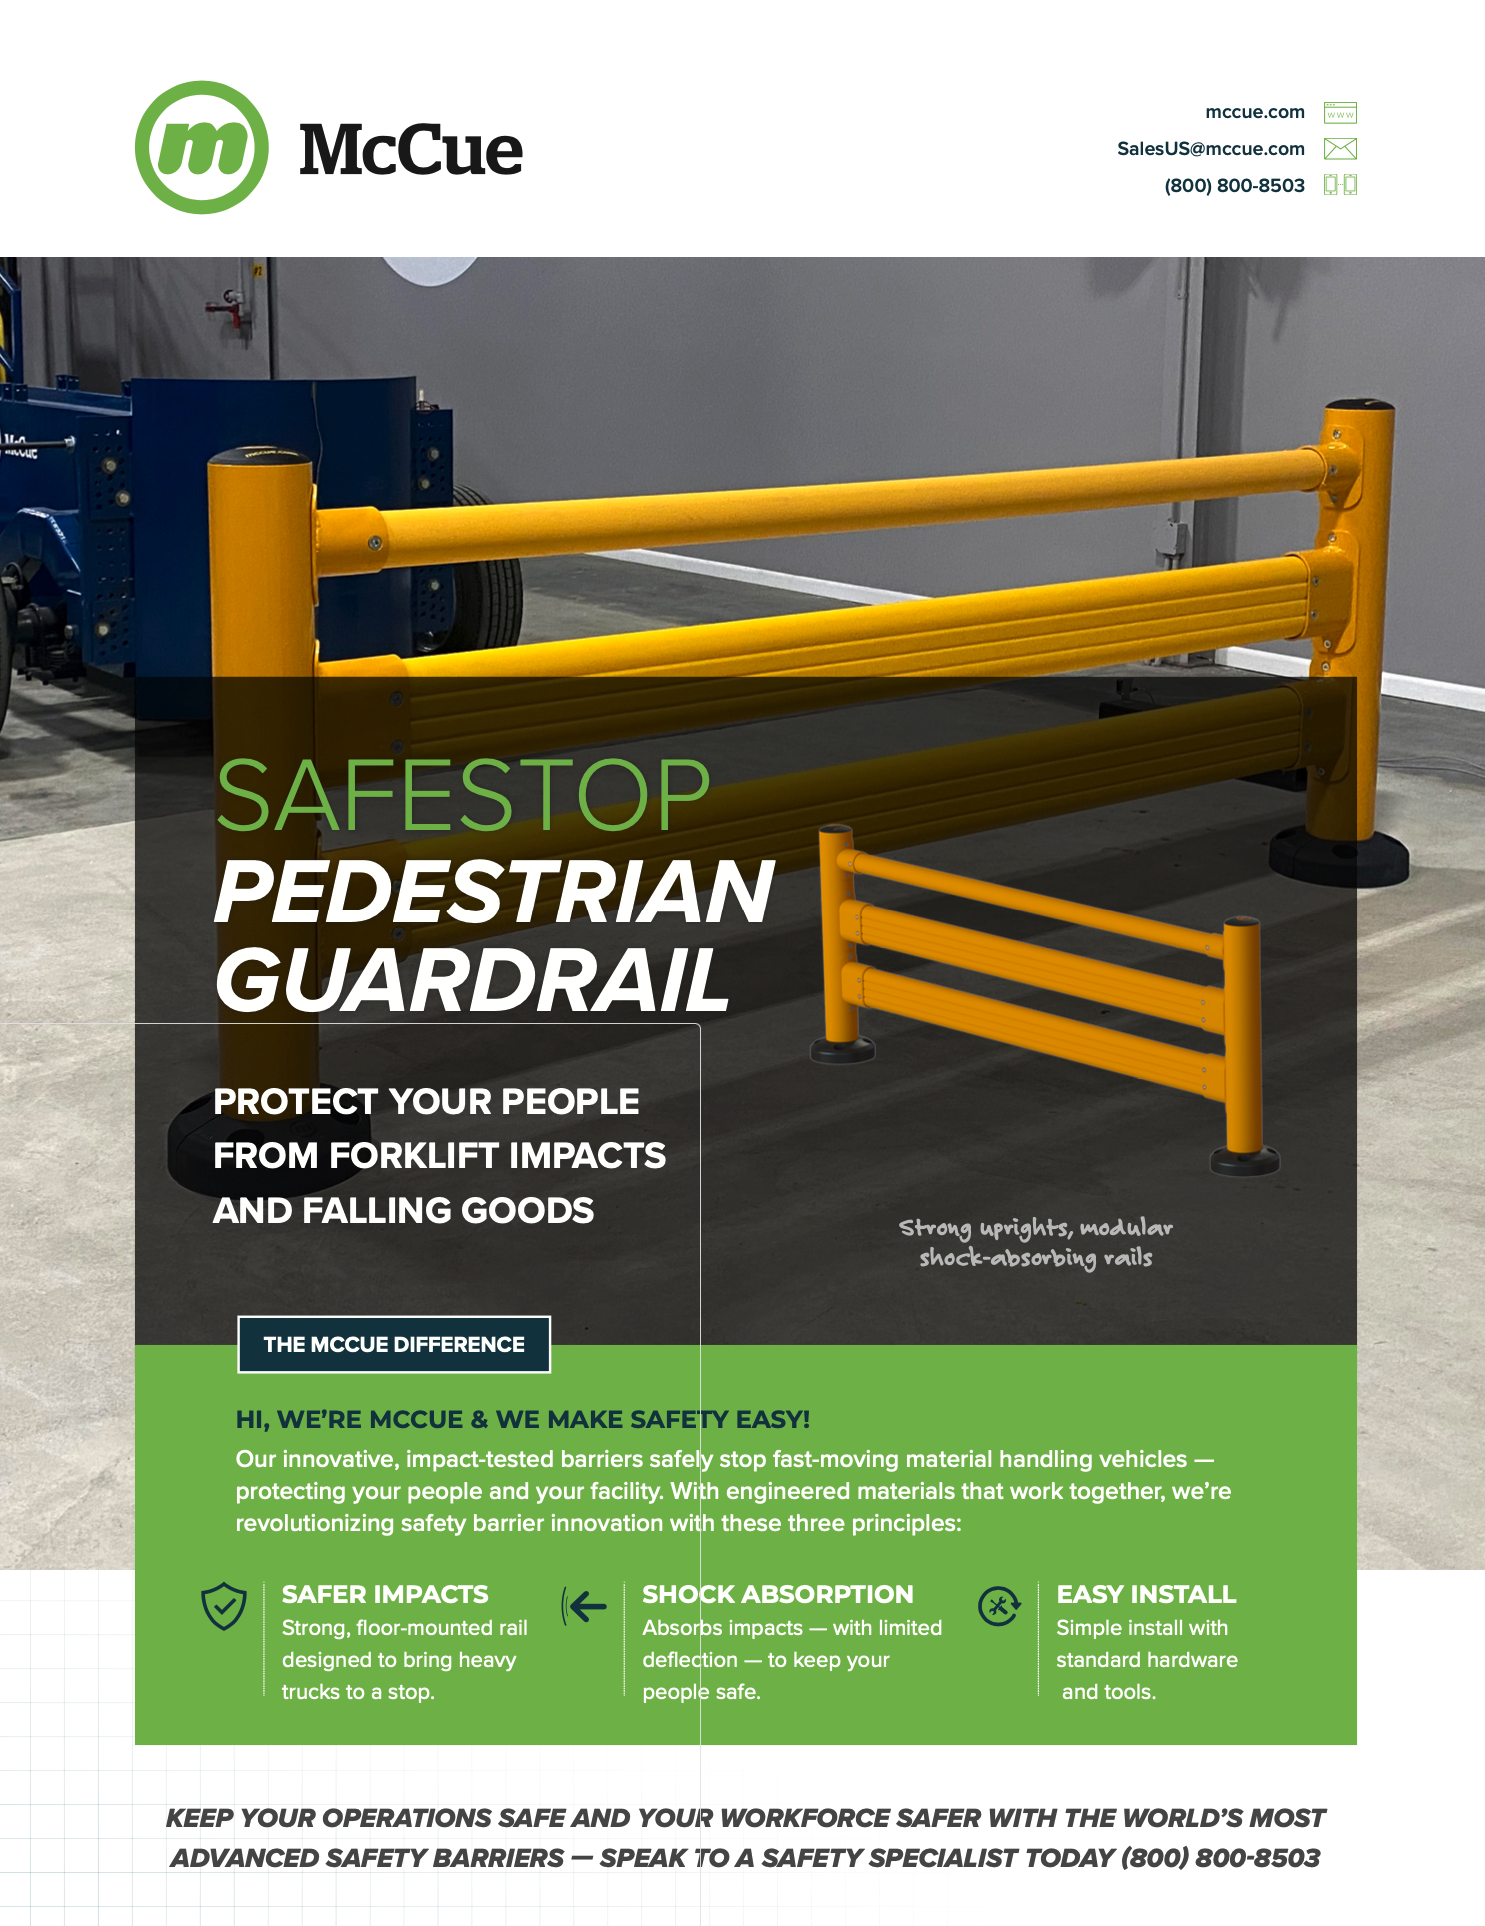 SafeStop Pedestrian GuardRail Product Sheet